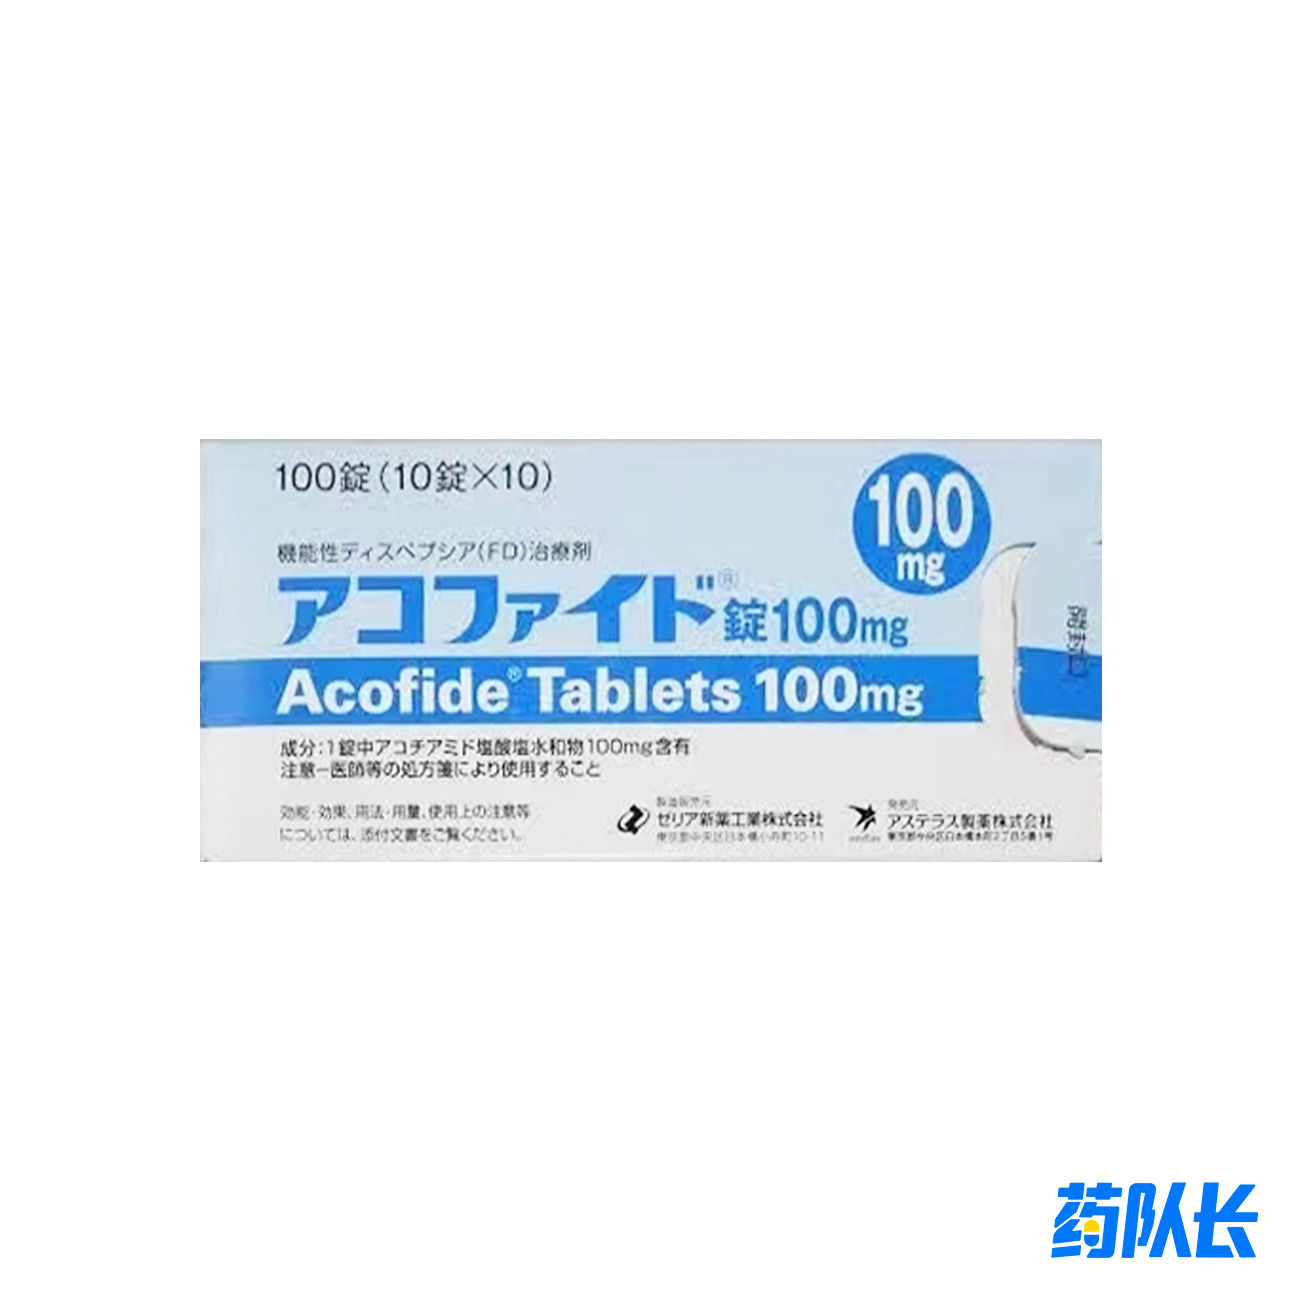  阿考替胺日本泽利亚 100mg*100粒